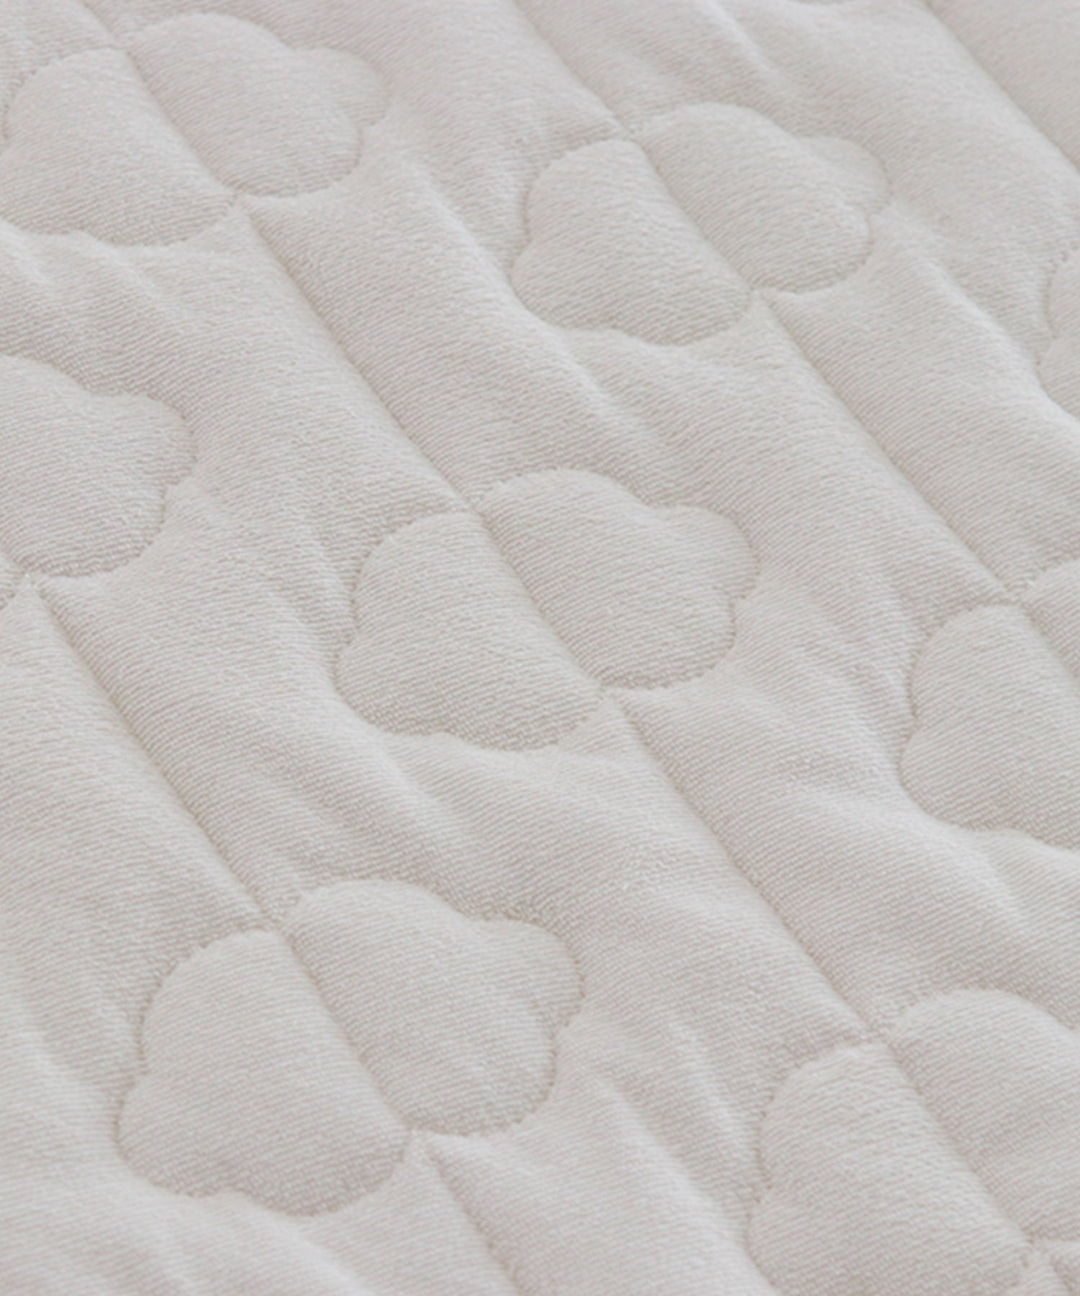 [Waterproof] Sweat-absorbing mattress pad [2-in-1] 27.6″ × 47.2″